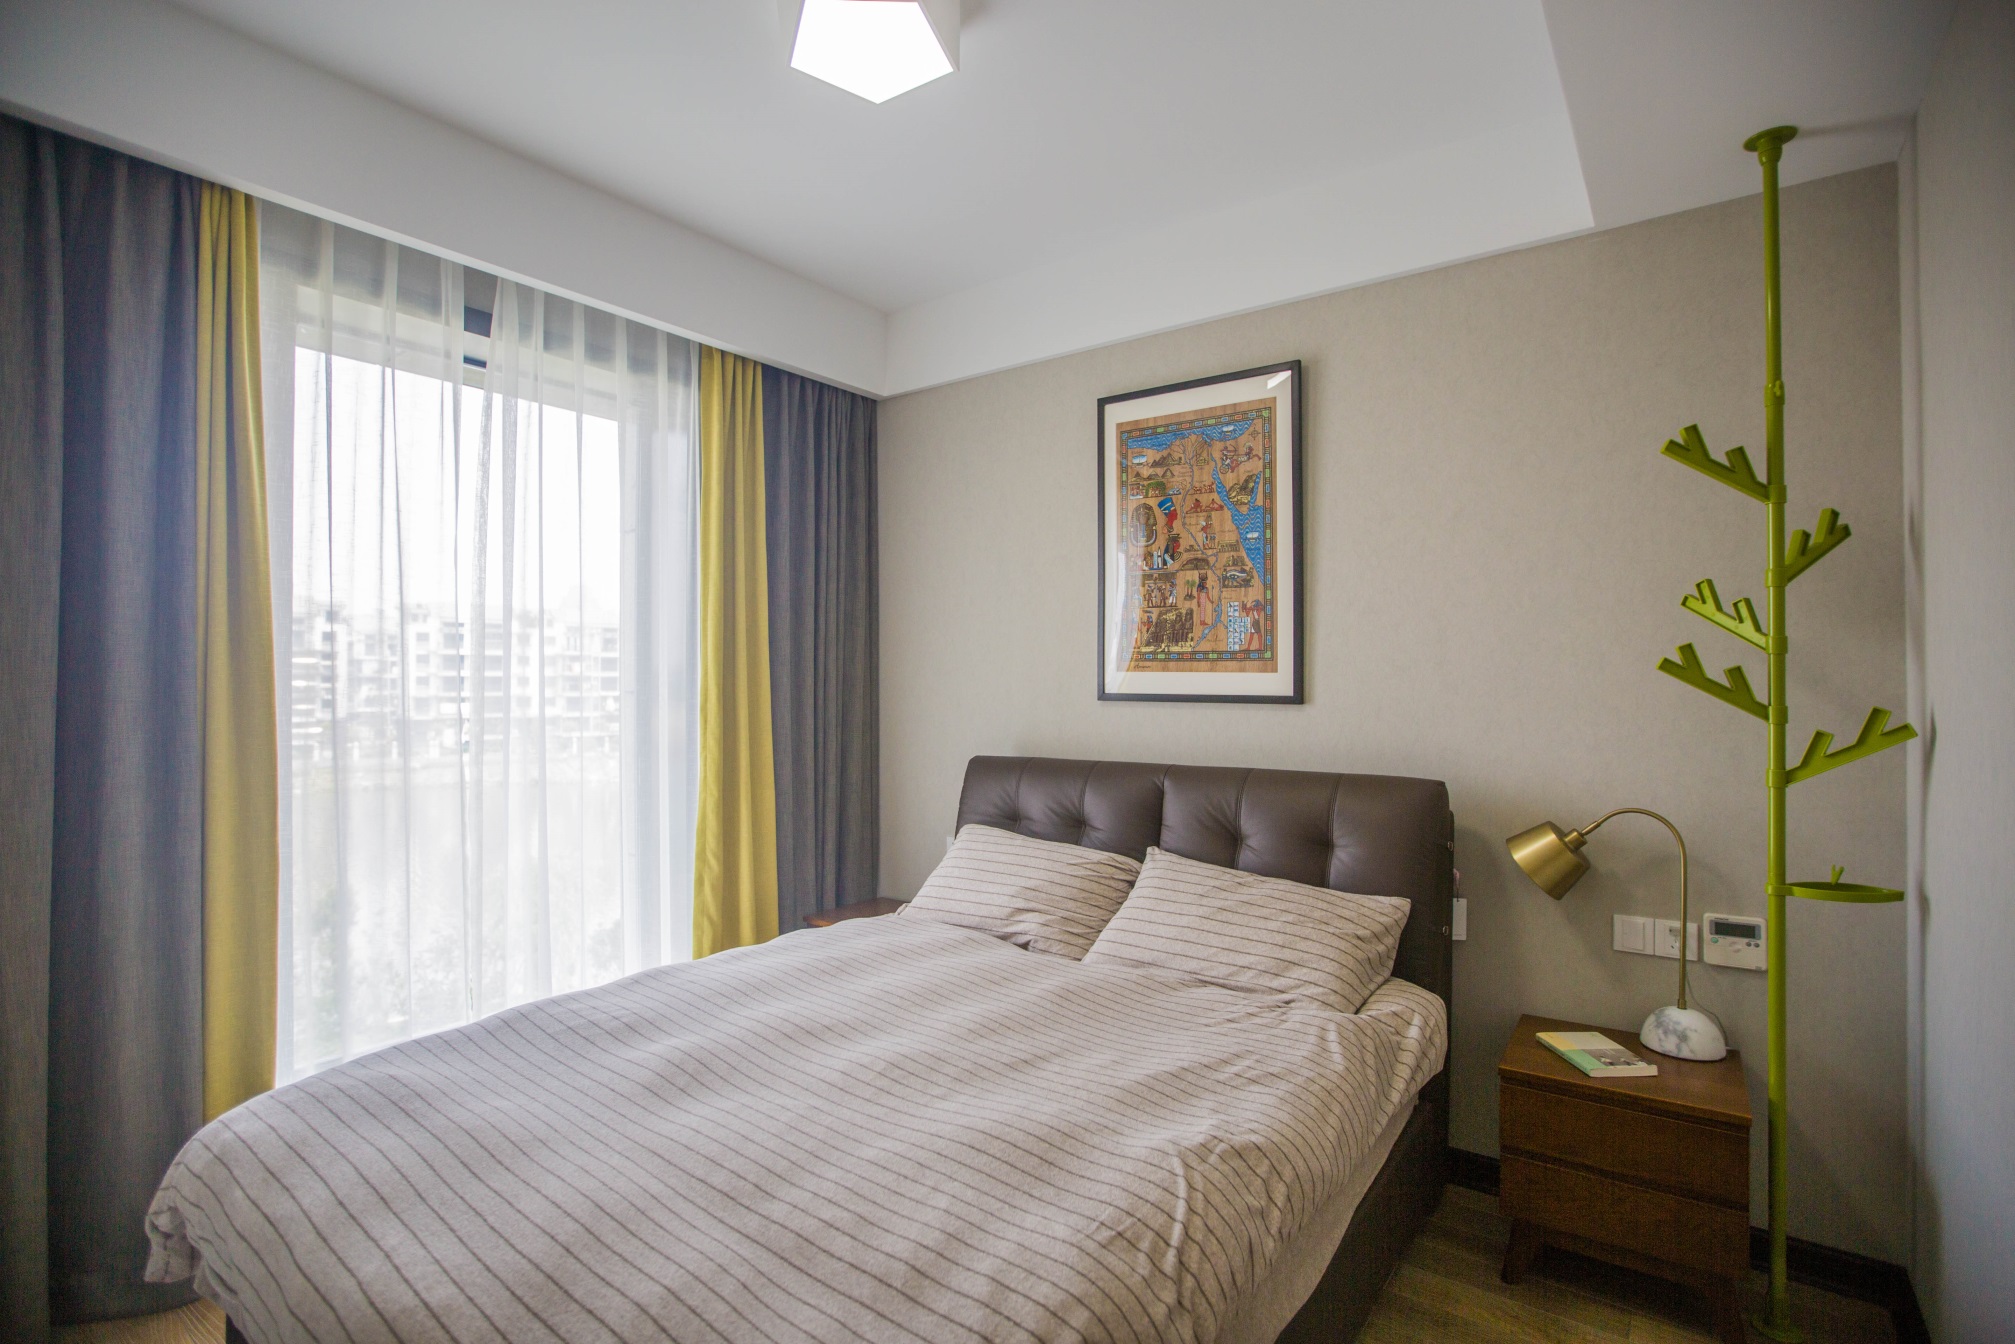 浅米色背景墙给人带来理性的美感，床头皮质软包简洁大方，空间硬朗整洁。